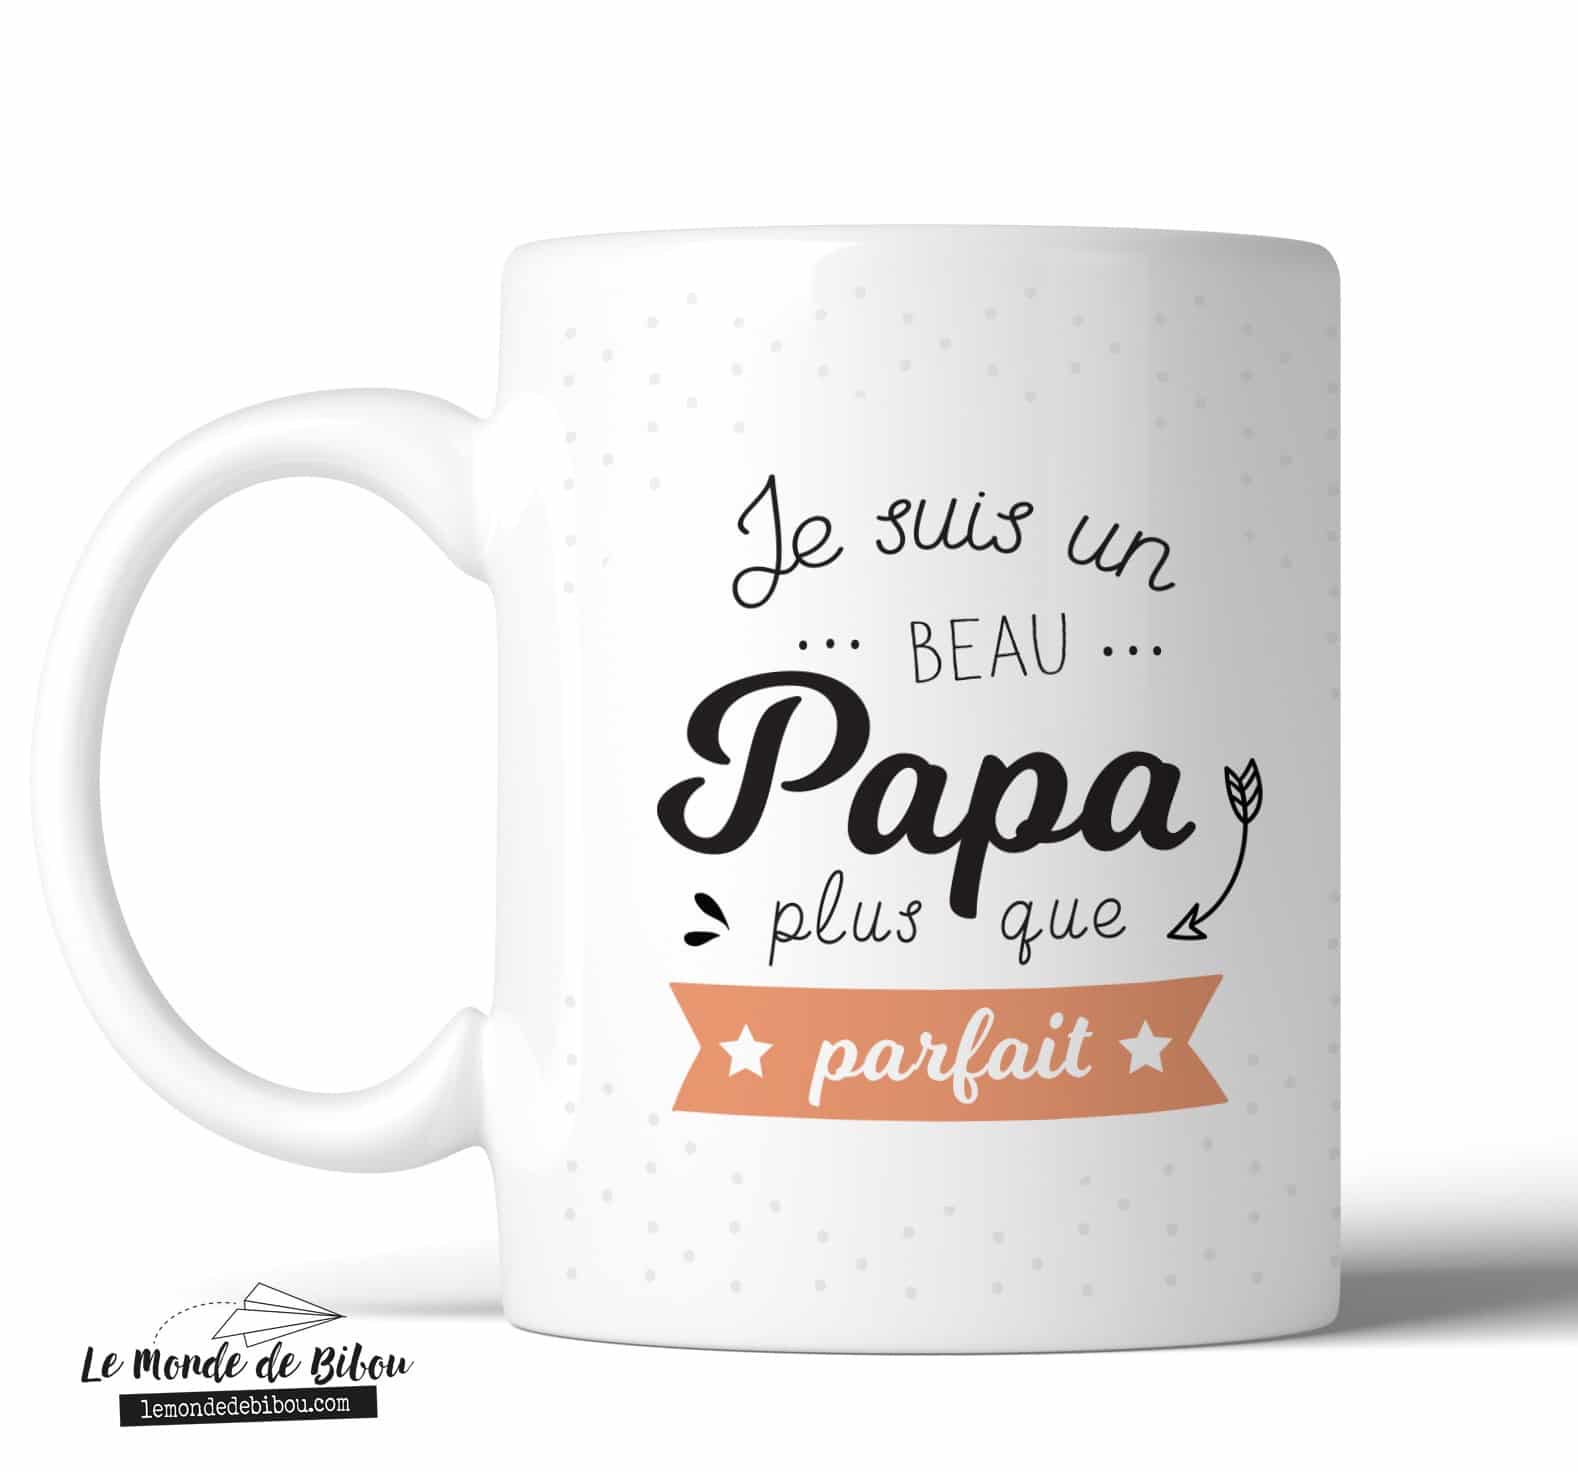 Mug parfait Beau papa - Le Monde de Bibou - Cadeaux personnalisés